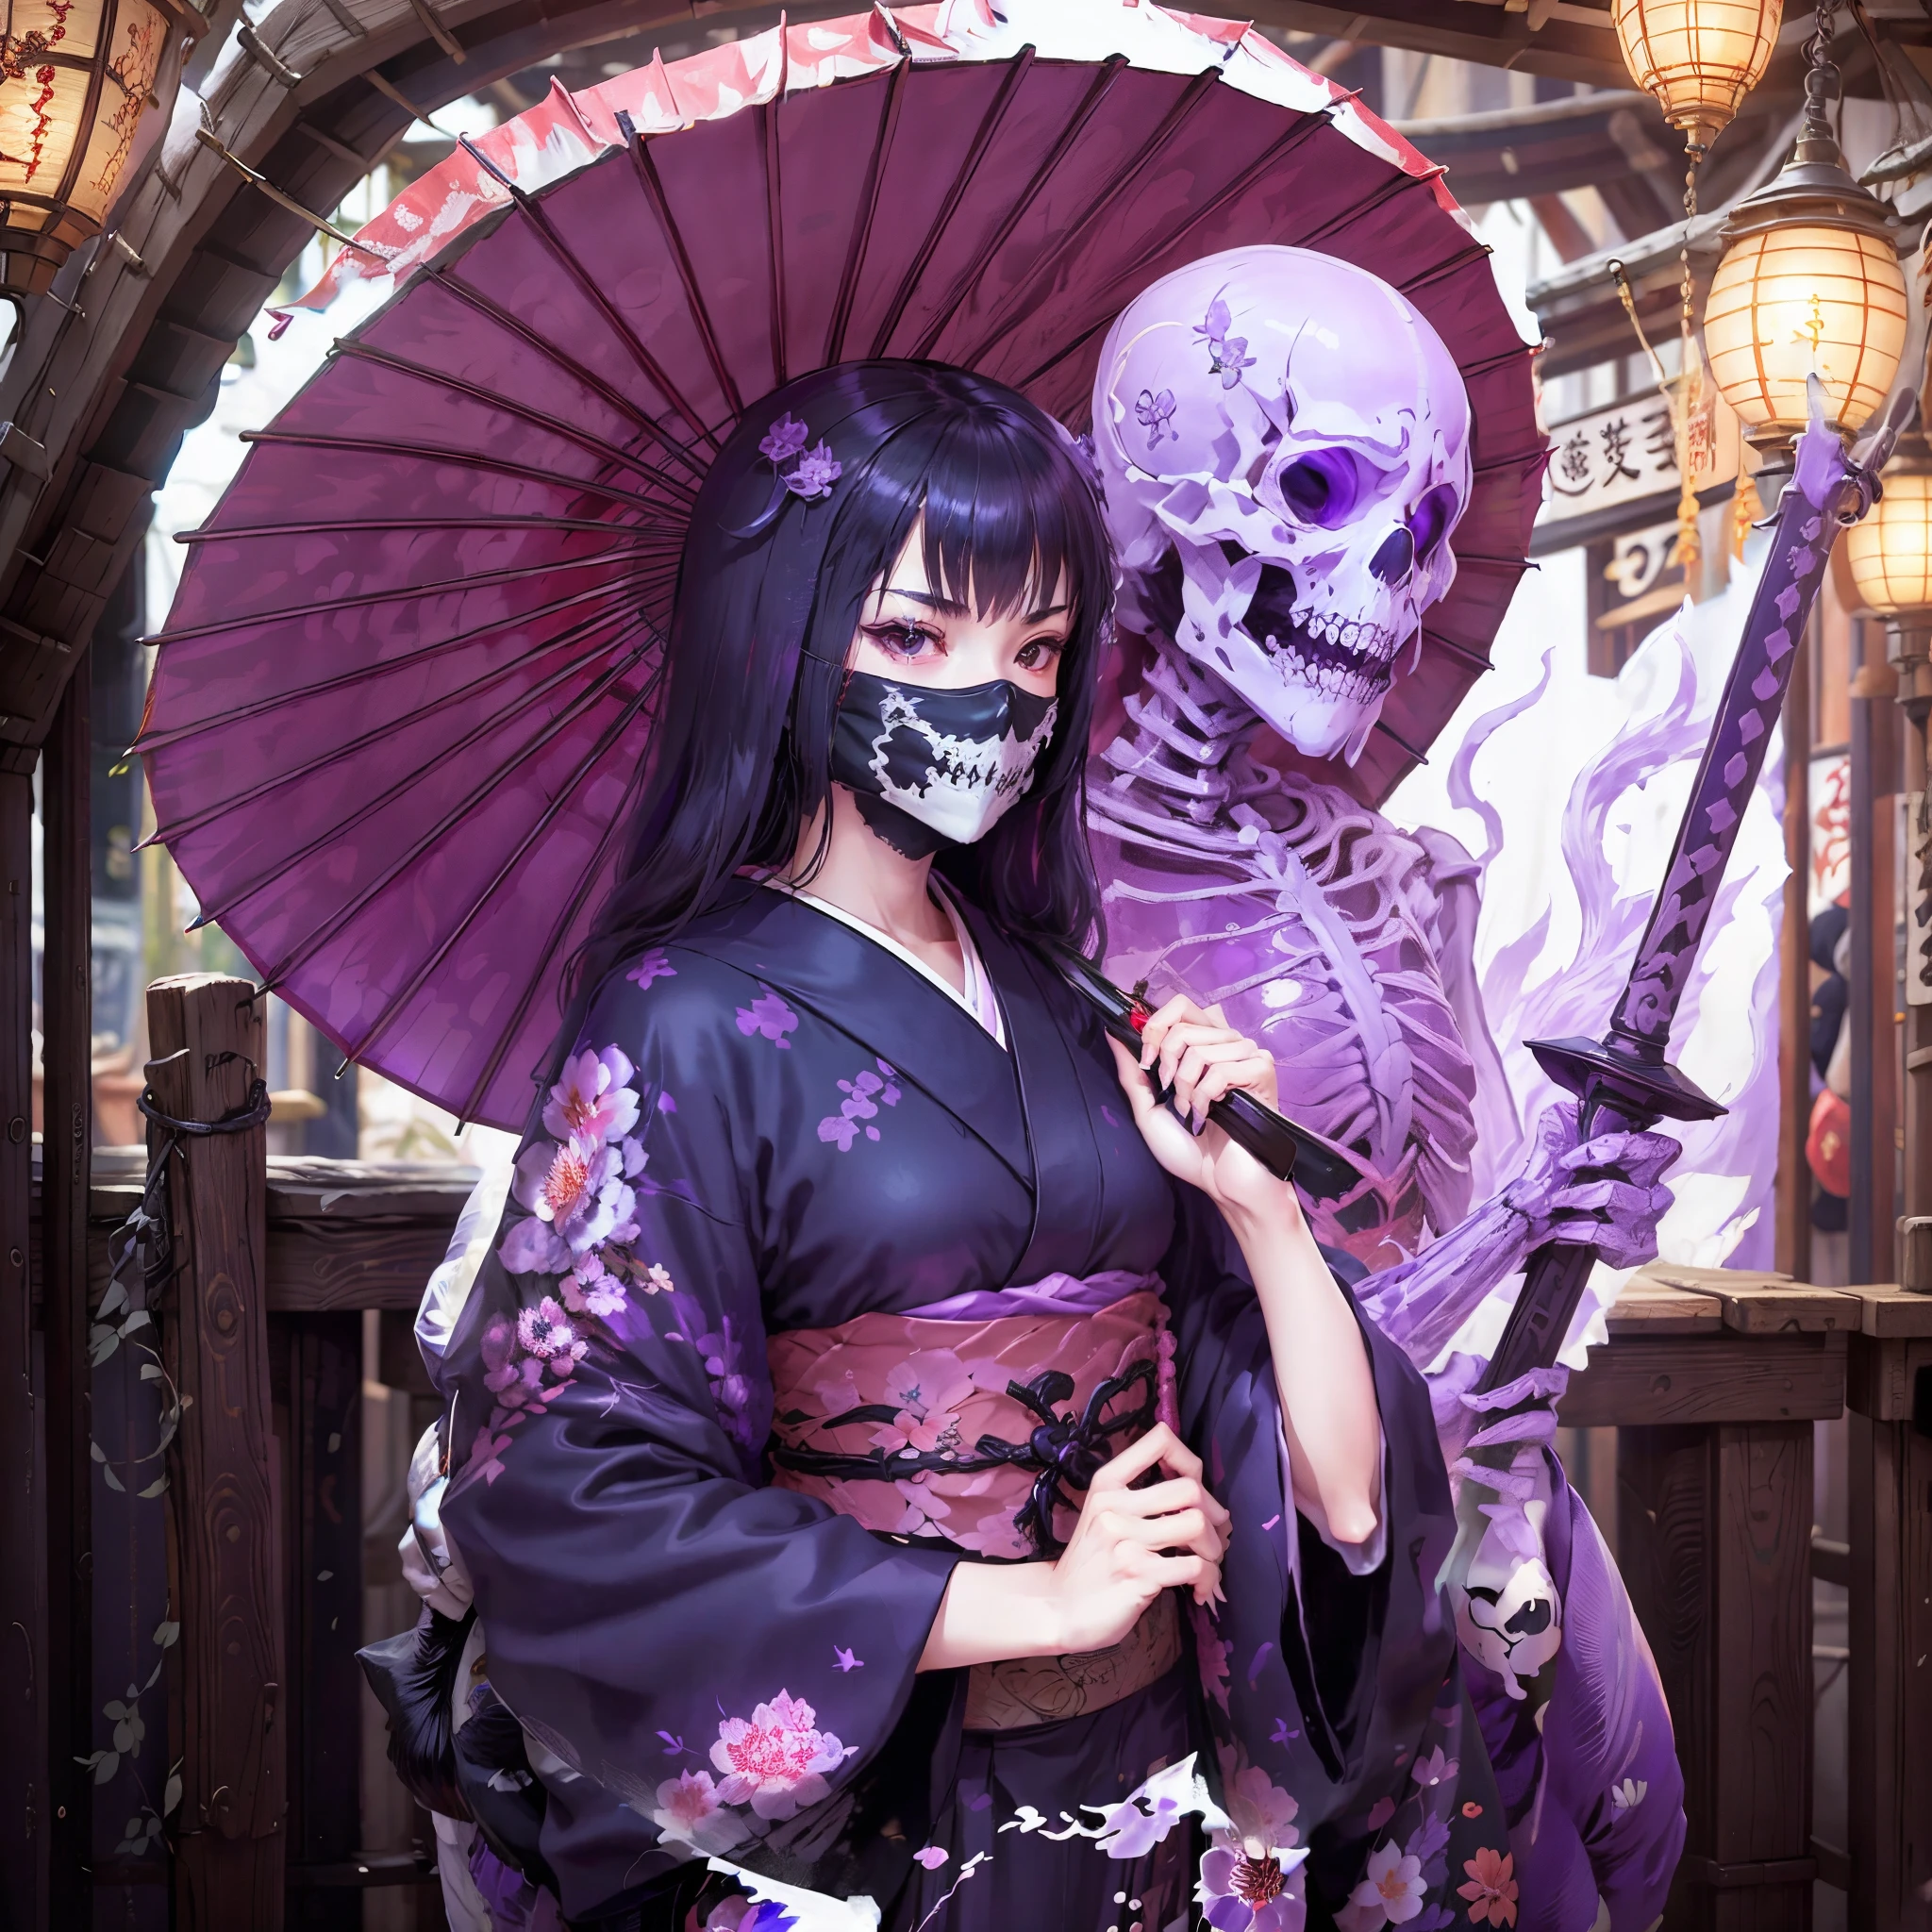 Garota de quimono. ela levanta sua espada. Guarda-chuva japonês. usar ossos. Uma máscara em forma de esqueleto que cobre a boca. Um esqueleto roxo translúcido aparece atrás da garota. Chama Roxa.